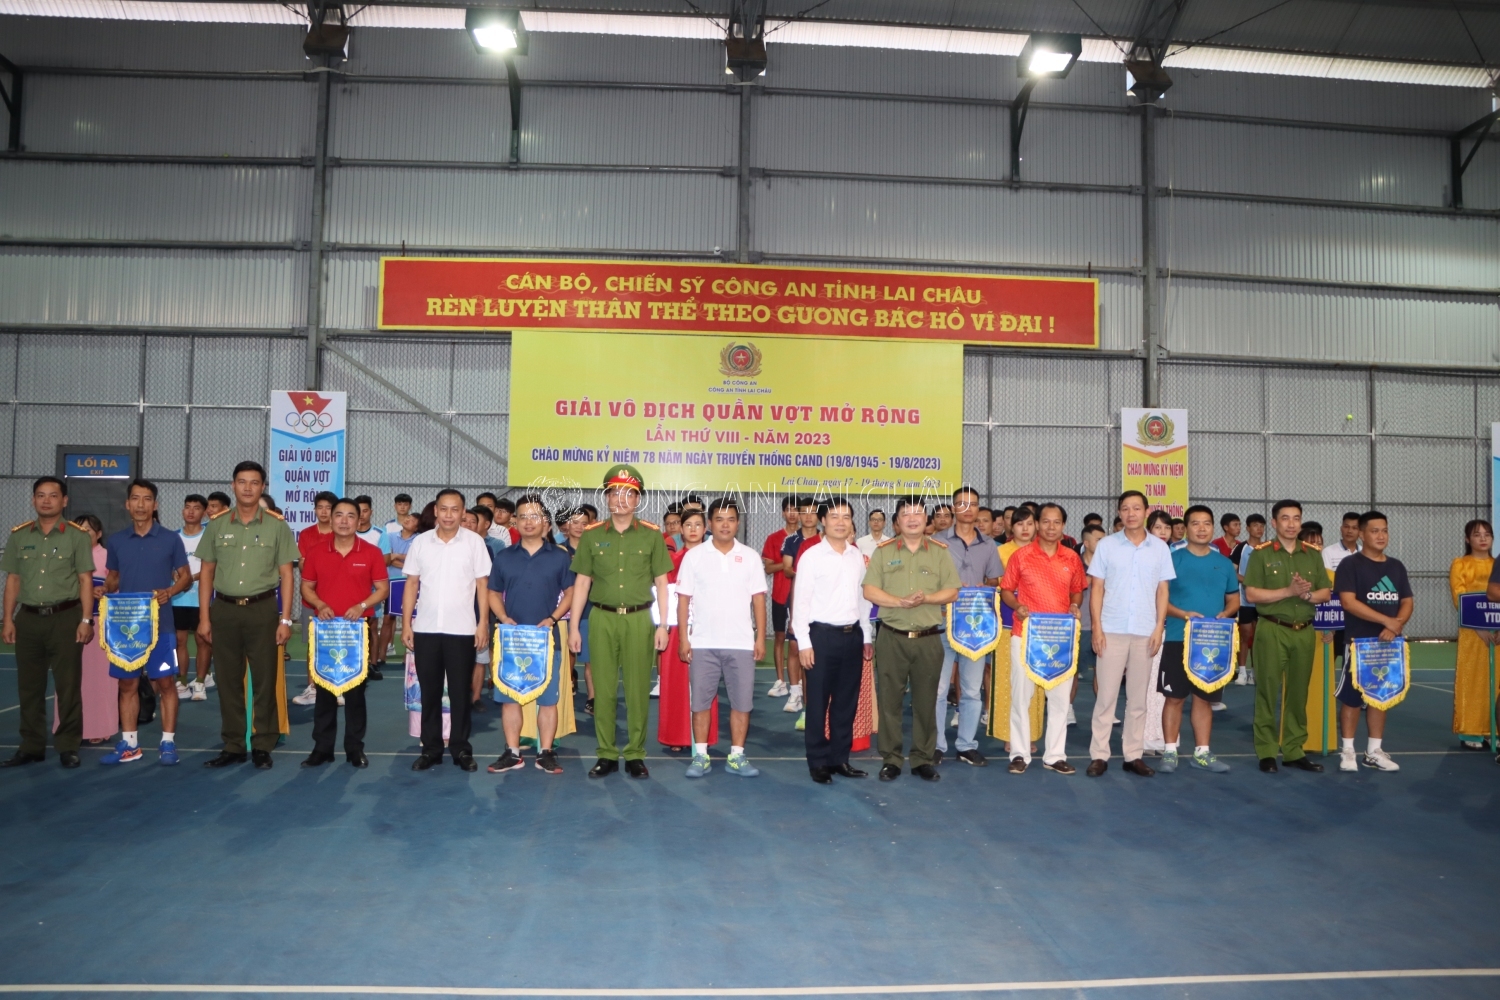 Đại tá Phạm Hải Đăng, Phó Giám đốc Công an tỉnh, Trưởng Ban tổ chức giải tặng cờ lưu niệm cho các đoàn vận động viên tham gia giải đấu.